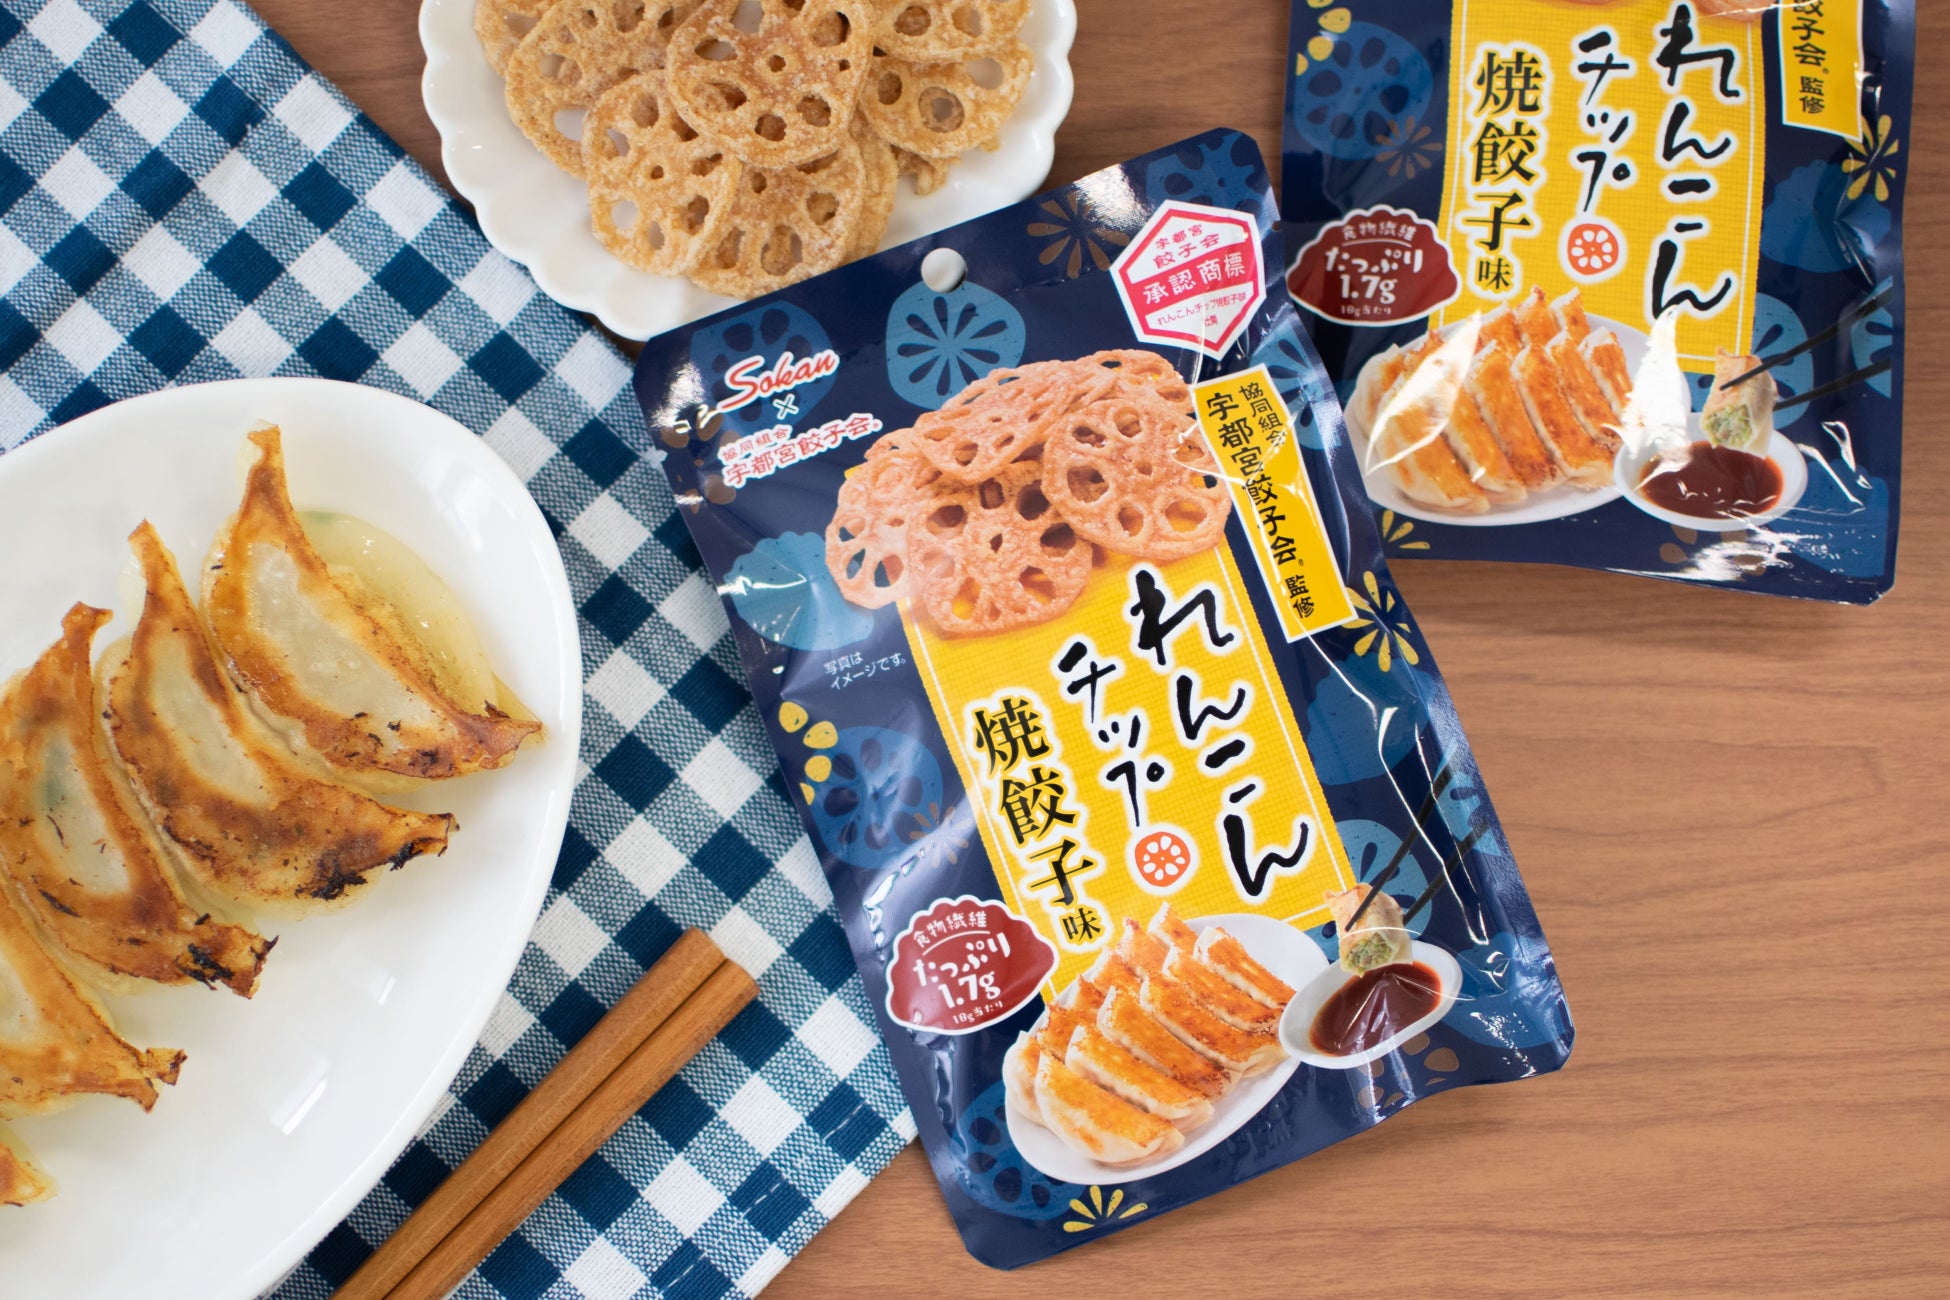 食物繊維たっぷりのれんこんチップシリーズから、宇都宮餃子会監修『れんこんチップ 焼餃子味』が新登場！